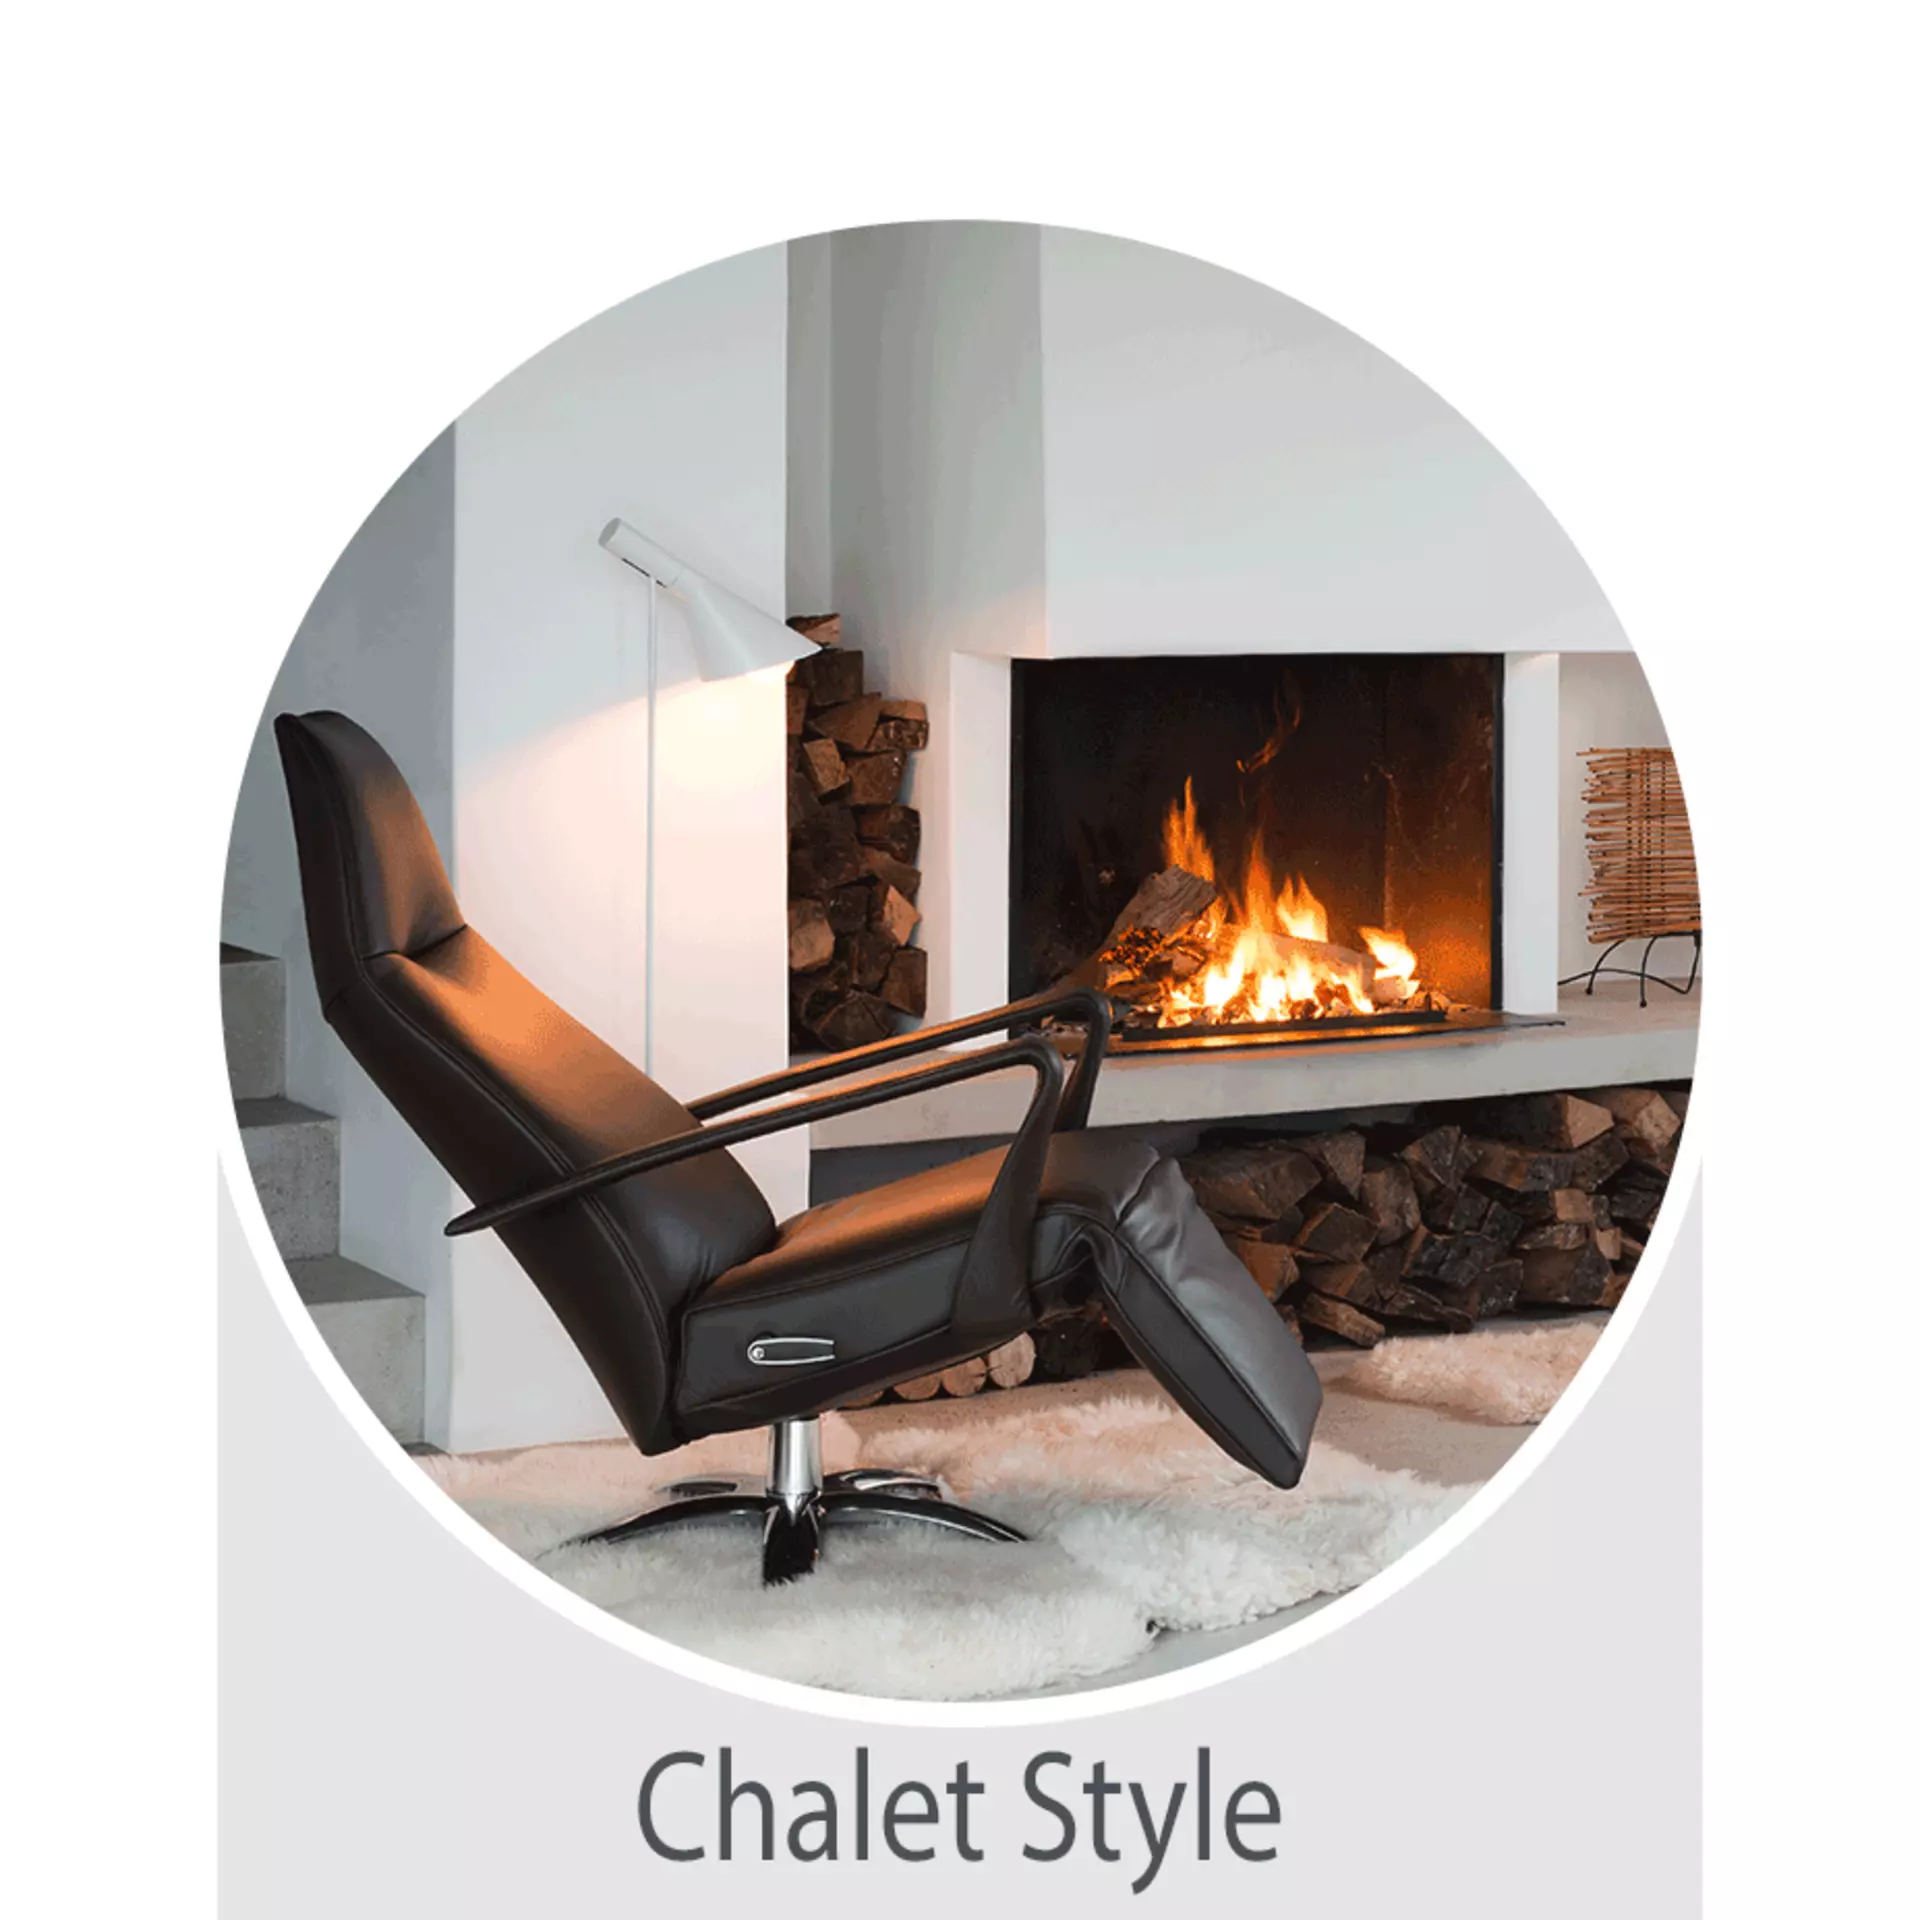 Chalet Style - jetzt den Trend bei Möbel Inhofer entdecken